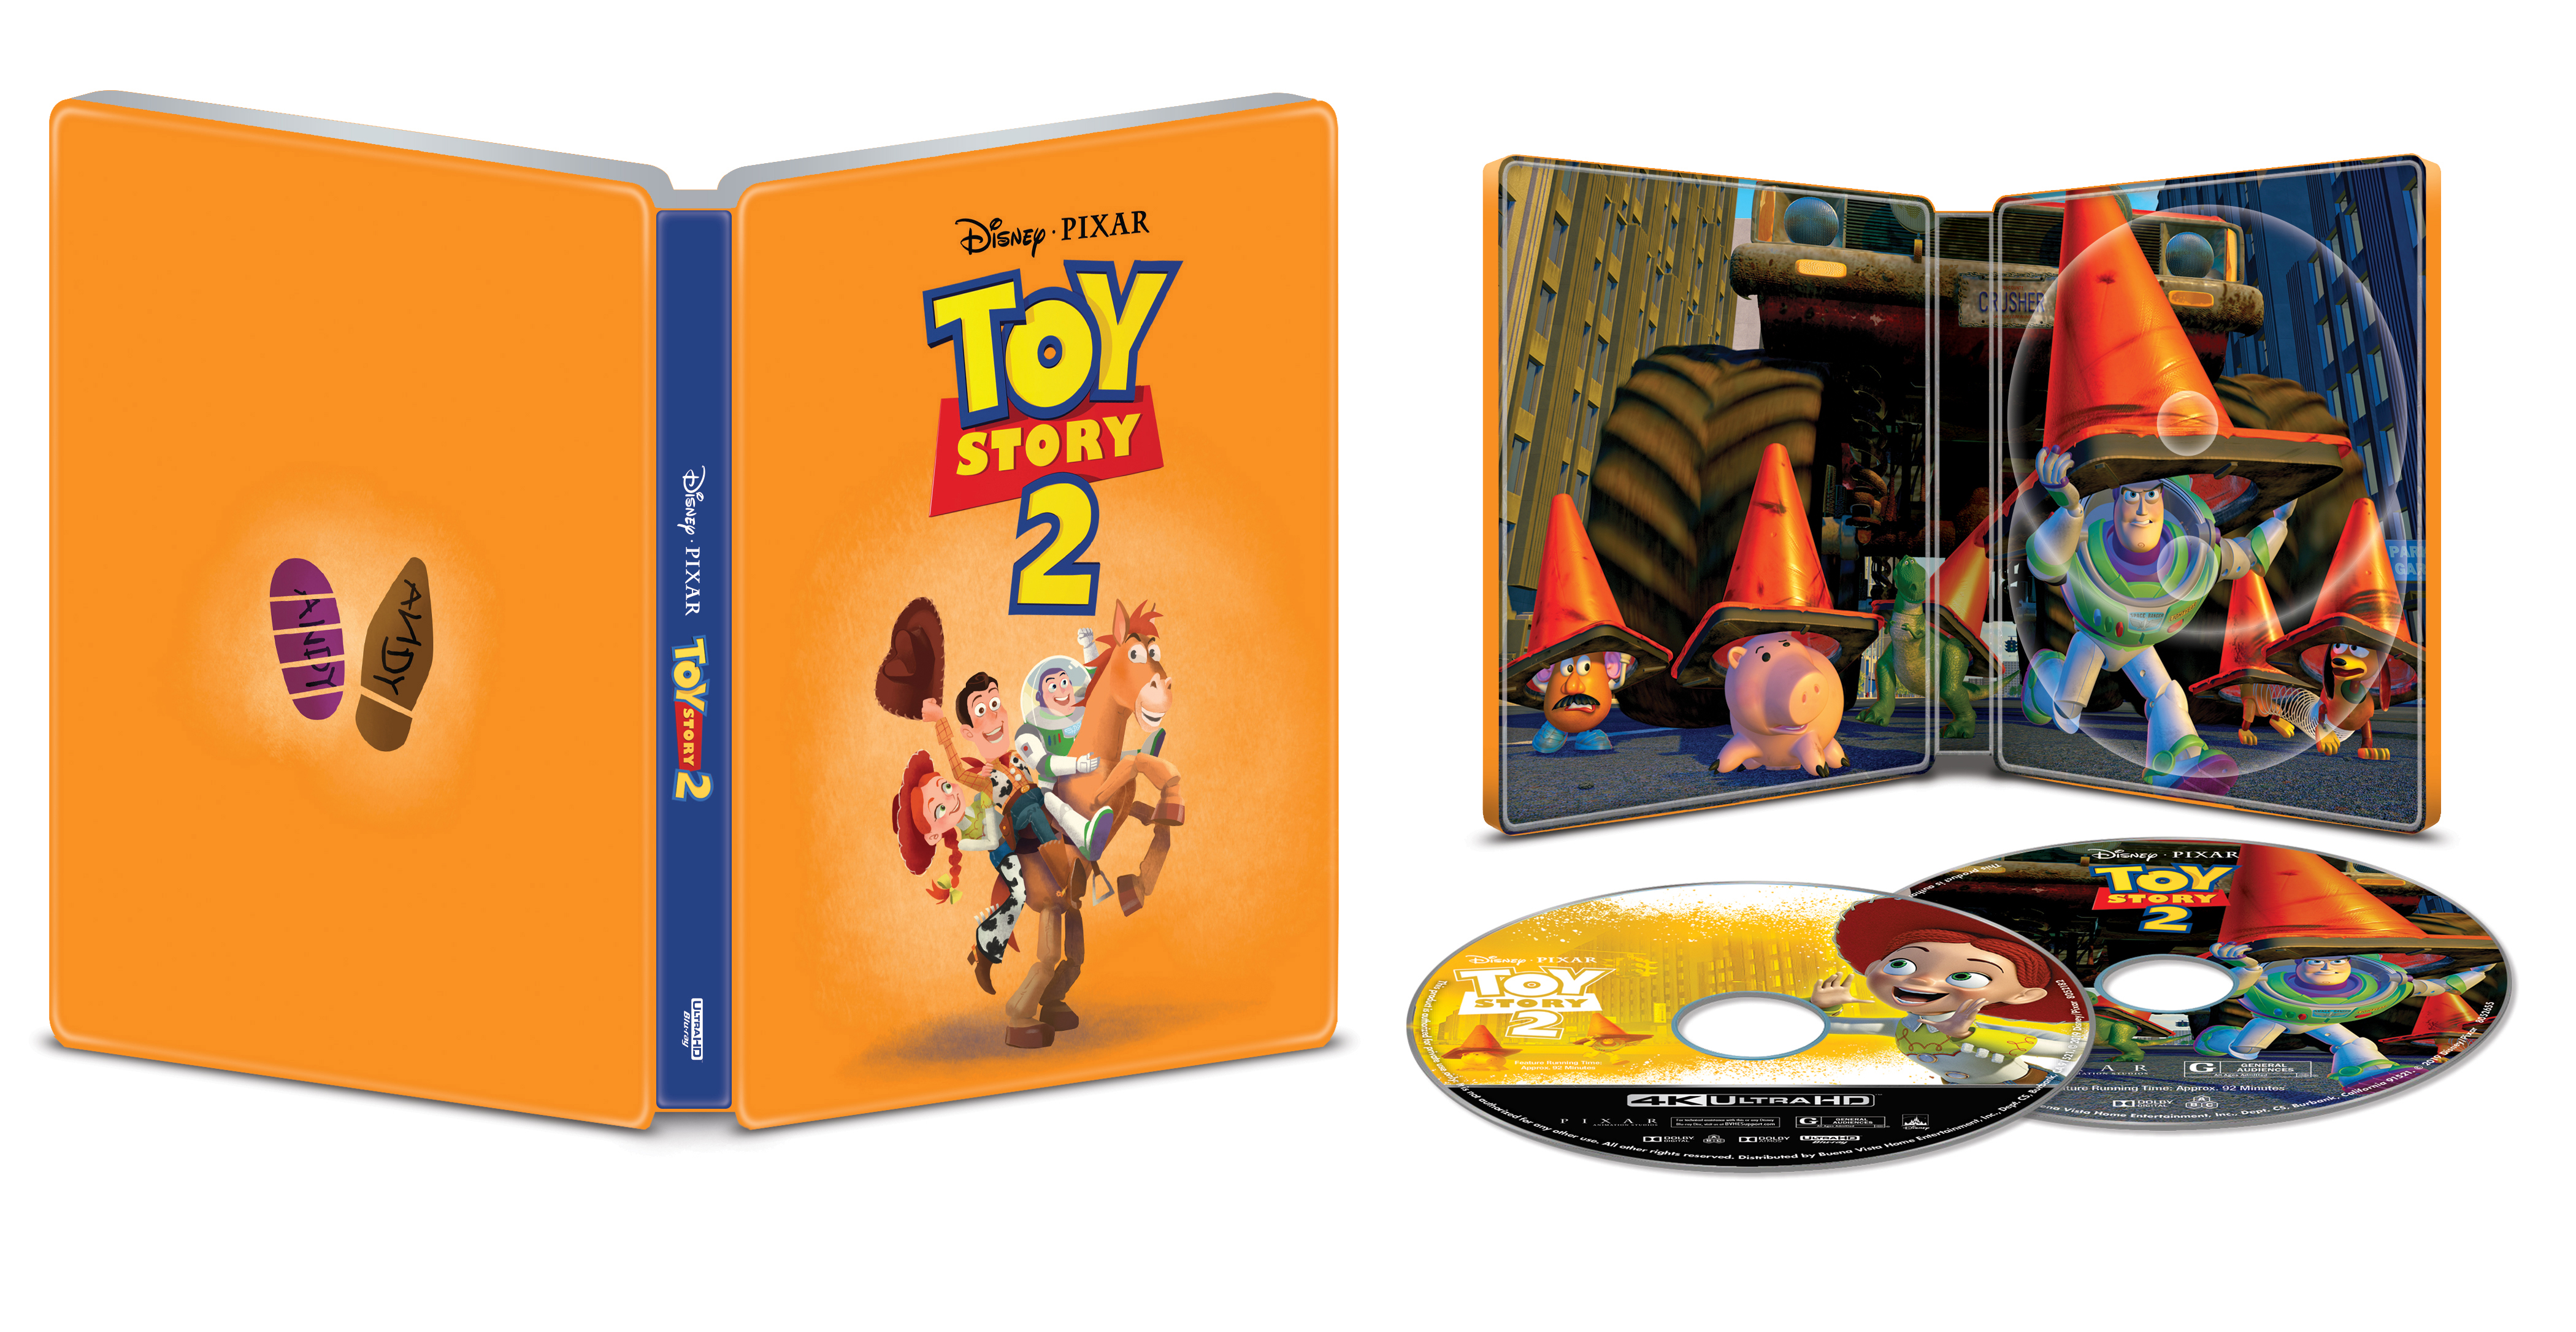 Best Buy Toy Story 2 Steelbook Includes Digital Copy 4k Ultra Hd Blu Ray Blu Ray Only Best Buy 1999